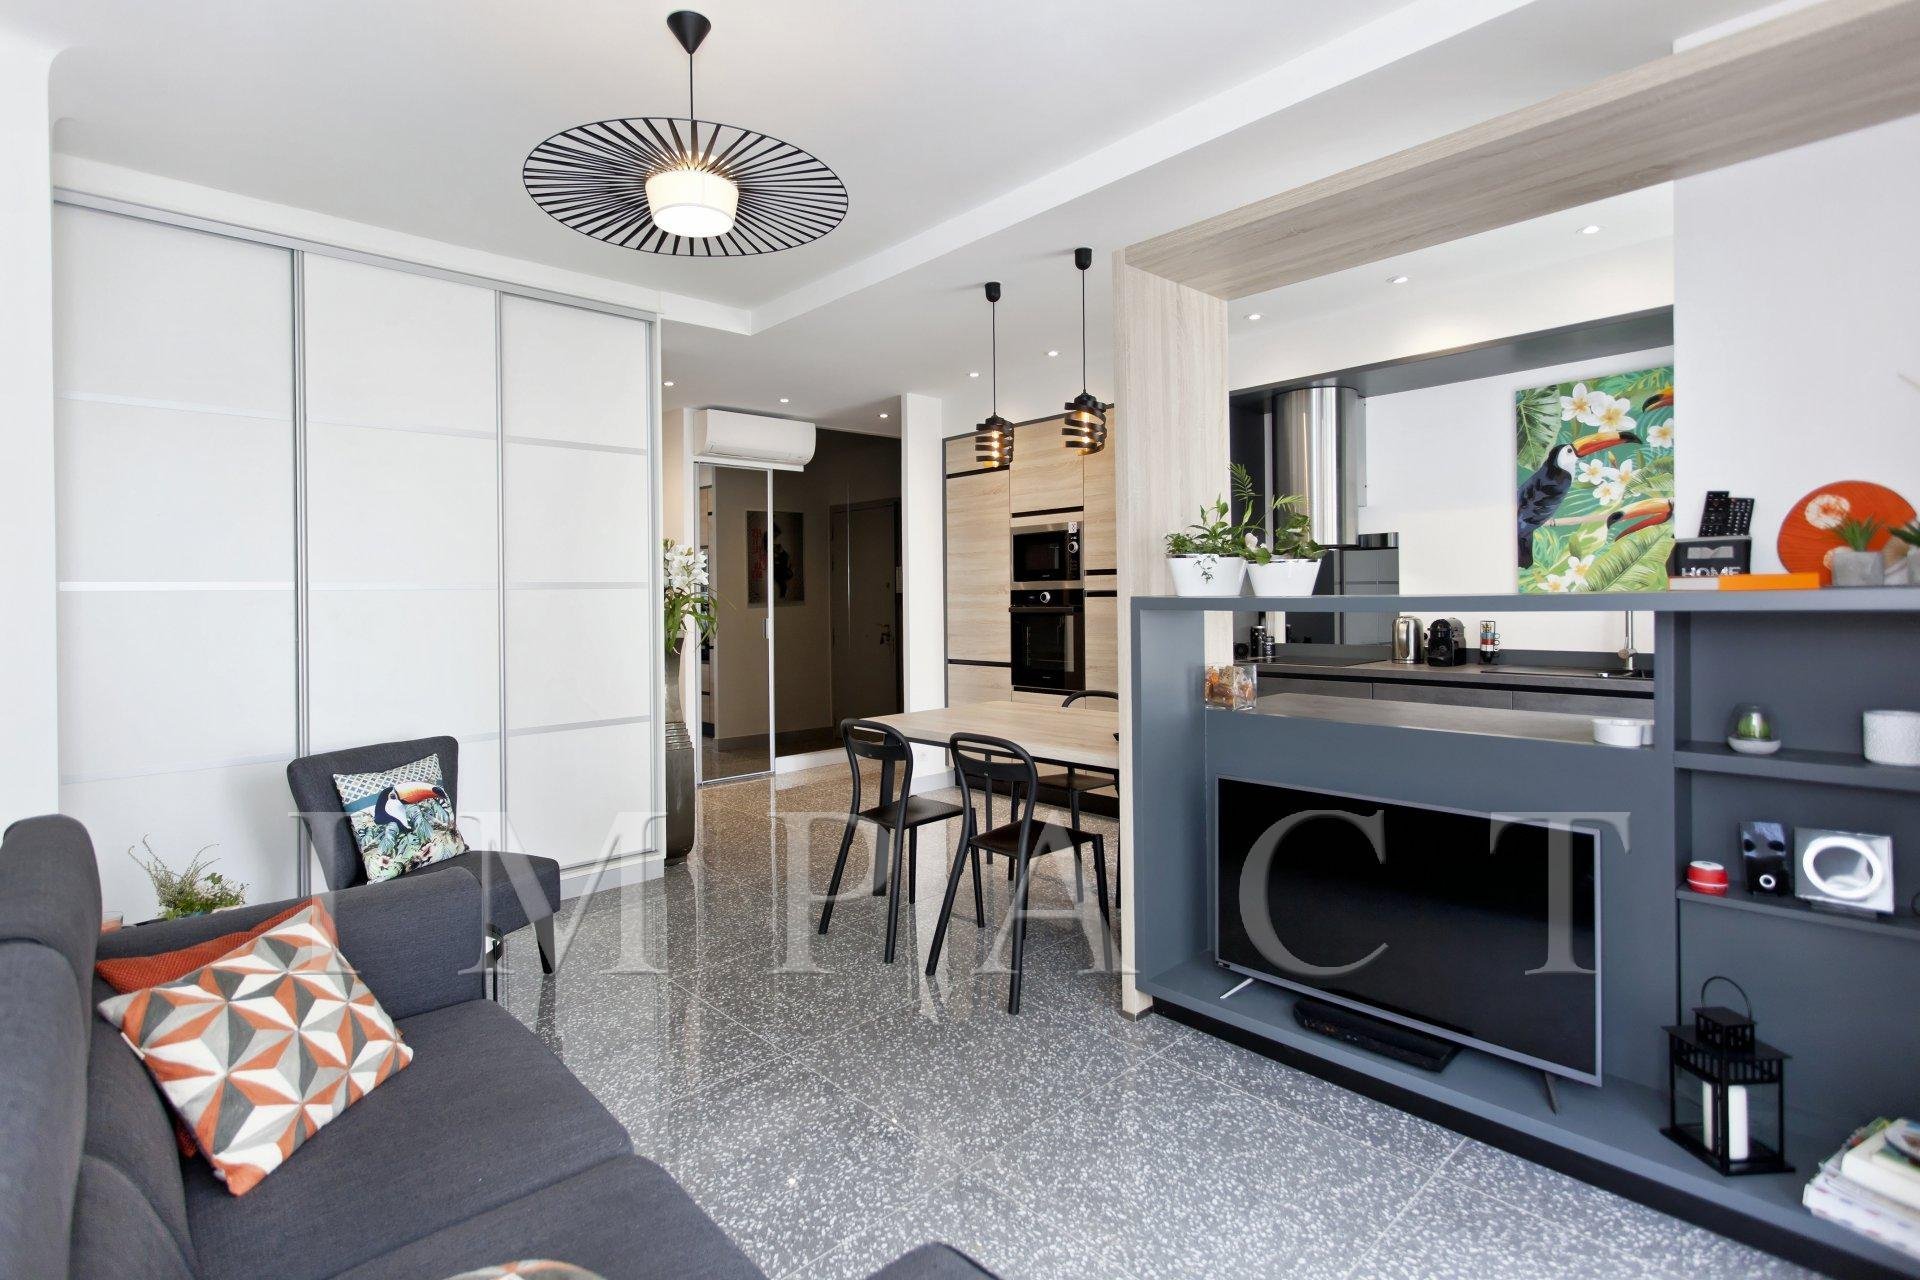 Living-room Carpet Stainless steel